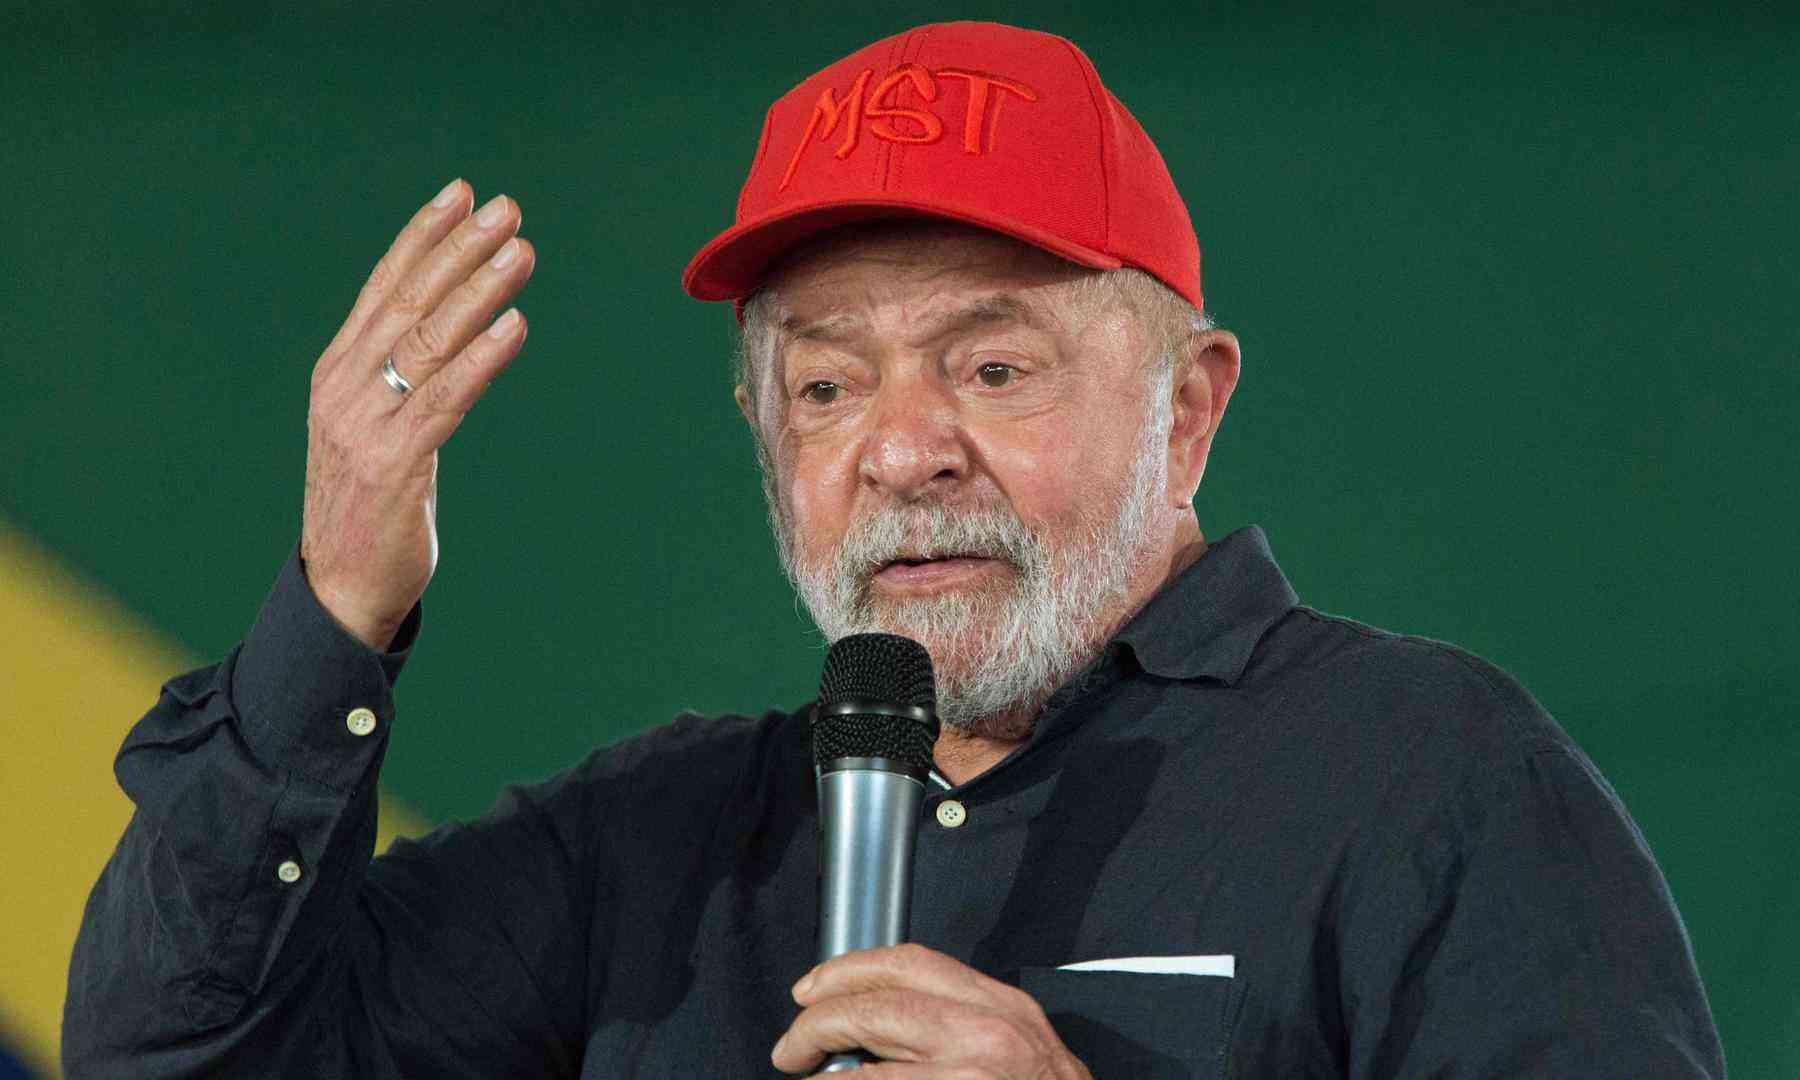 PT tem de aprender a conversar com evangélicos, afirma Lula